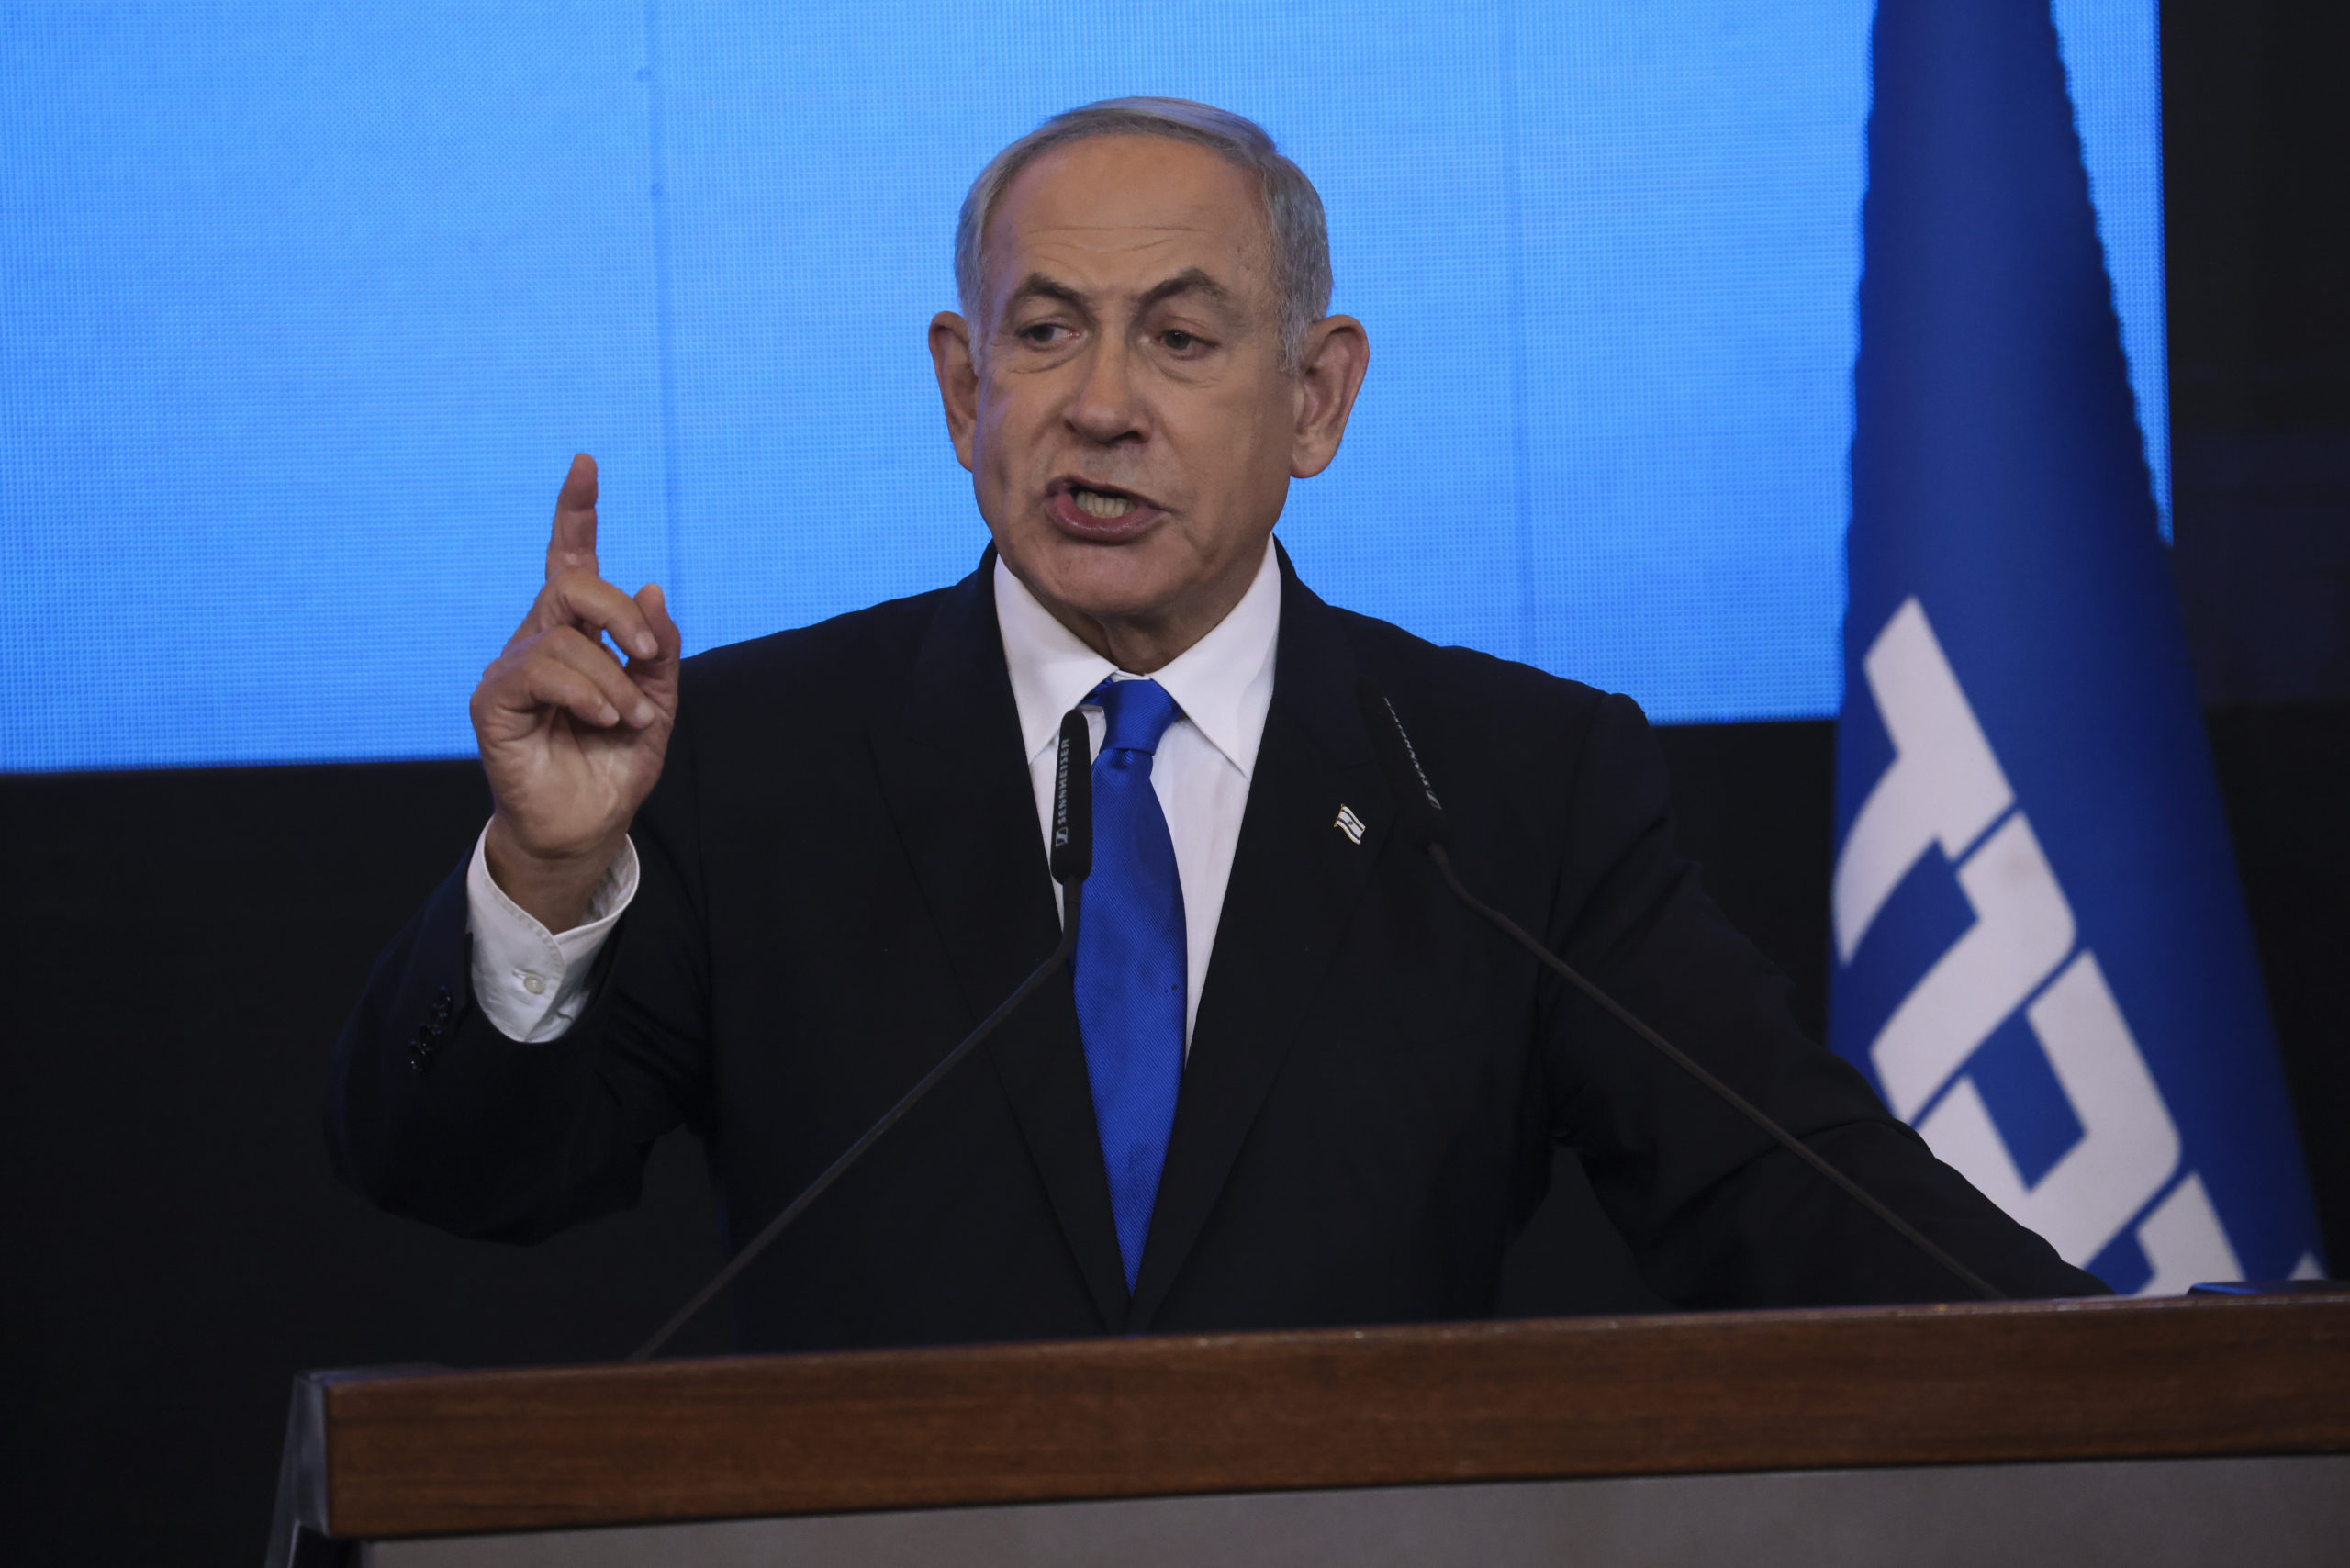 Ισραήλ: Ο Νετανιάχου ανακοίνωσε τη συμφωνία για σχηματισμό της πιο δεξιάς κυβέρνησης